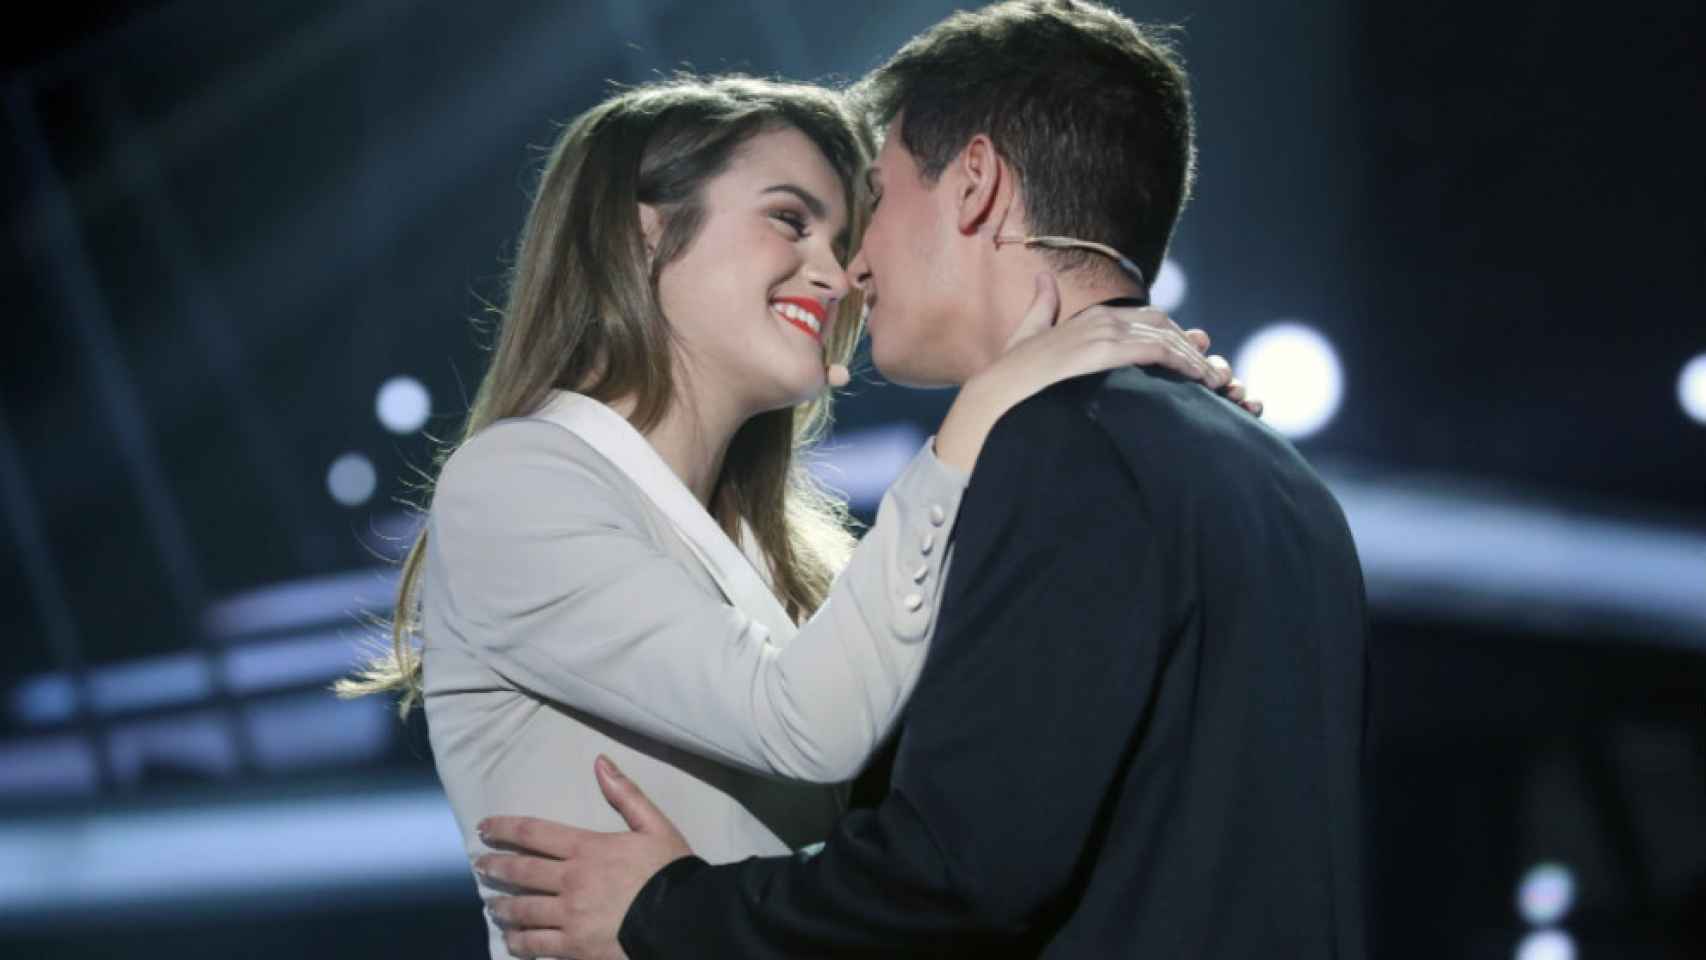 La historia de amor de Amaia y Alfred representará a España en Eurovisión